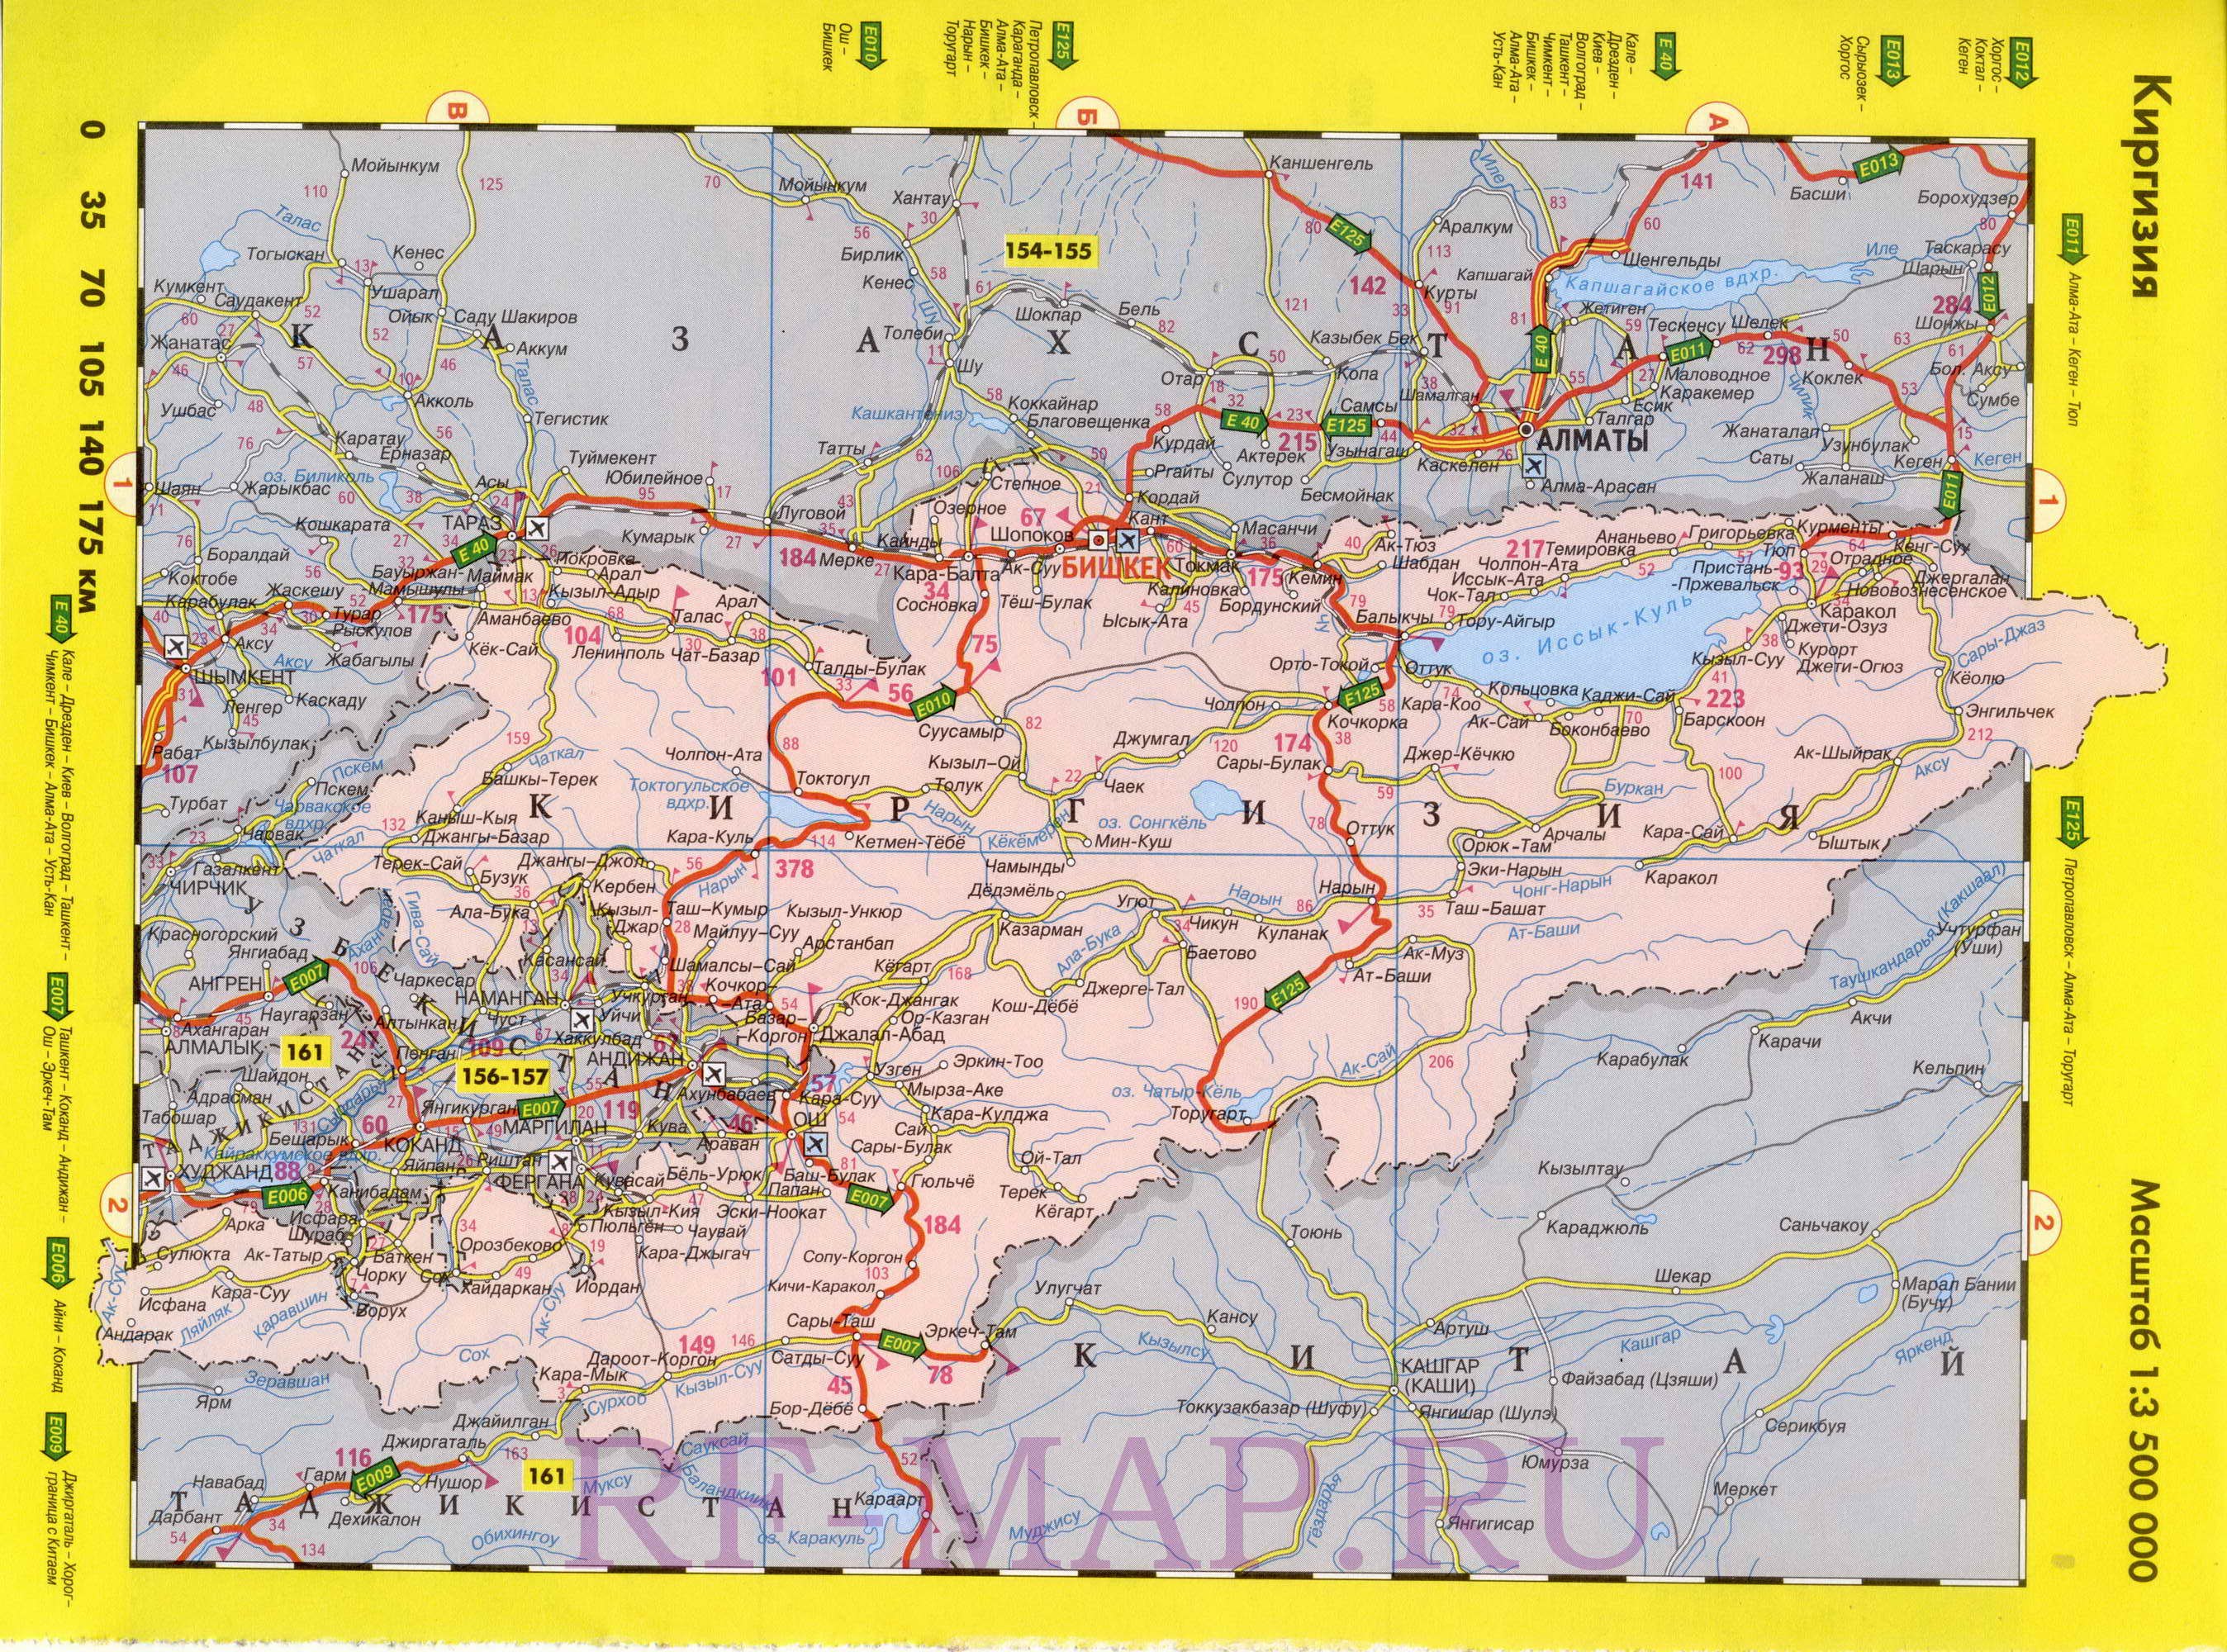 Киргизы на карте. Карта автодороги Кыргызстана. Карта Киргизии подробная с городами и поселками. Карта Киргизии дороги автомобильные. Карта дорог Кыргызстана автомобильных дорог.